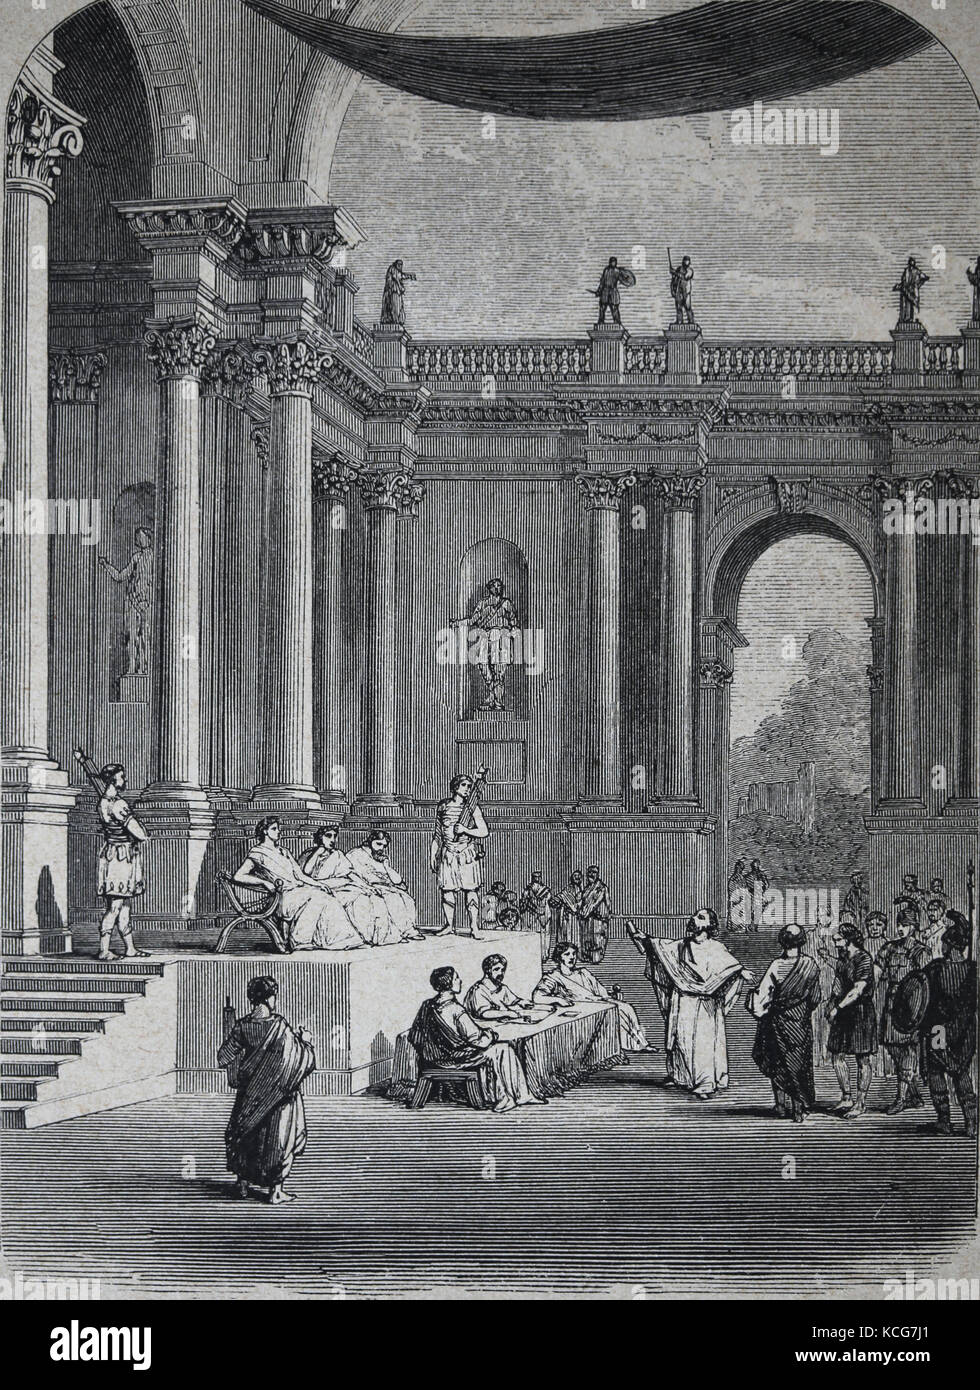 Praetorium romain ou palais de Ponce Pilate, préfet romain de Judée, Jérusalem. gravure, 1890. Banque D'Images